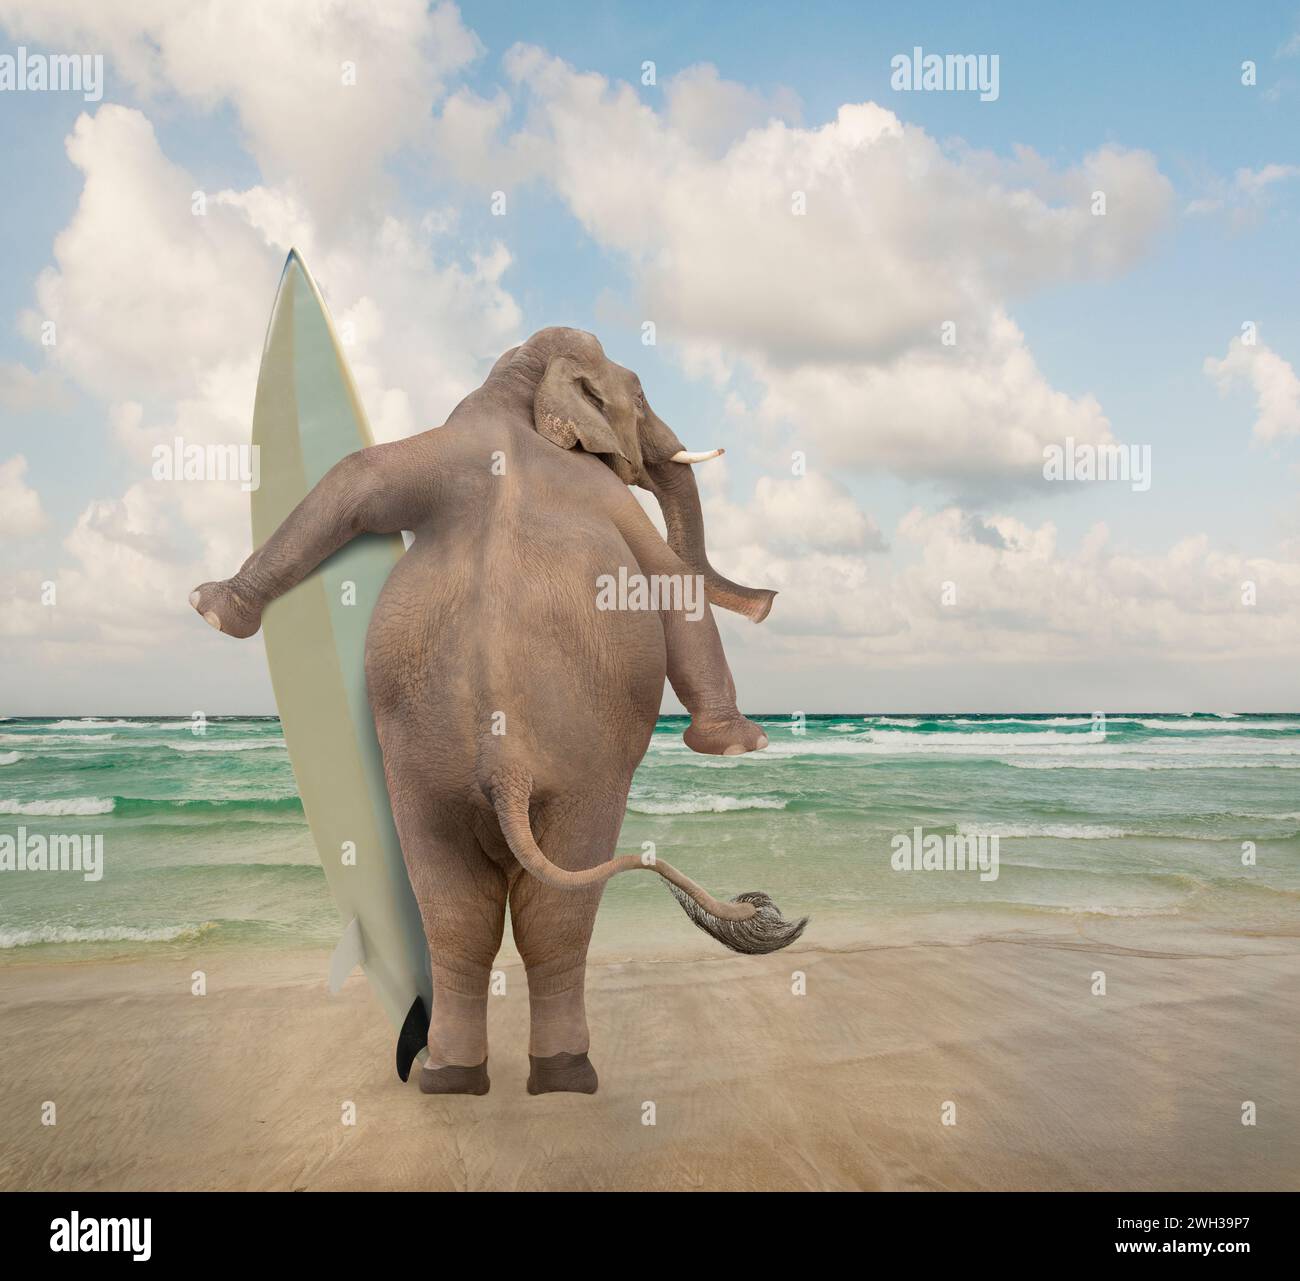 Un éléphant se tient sur une plage tenant une planche de surf et regardant les vagues dans une image animale drôle sur des compétences et des situations inattendues. Banque D'Images